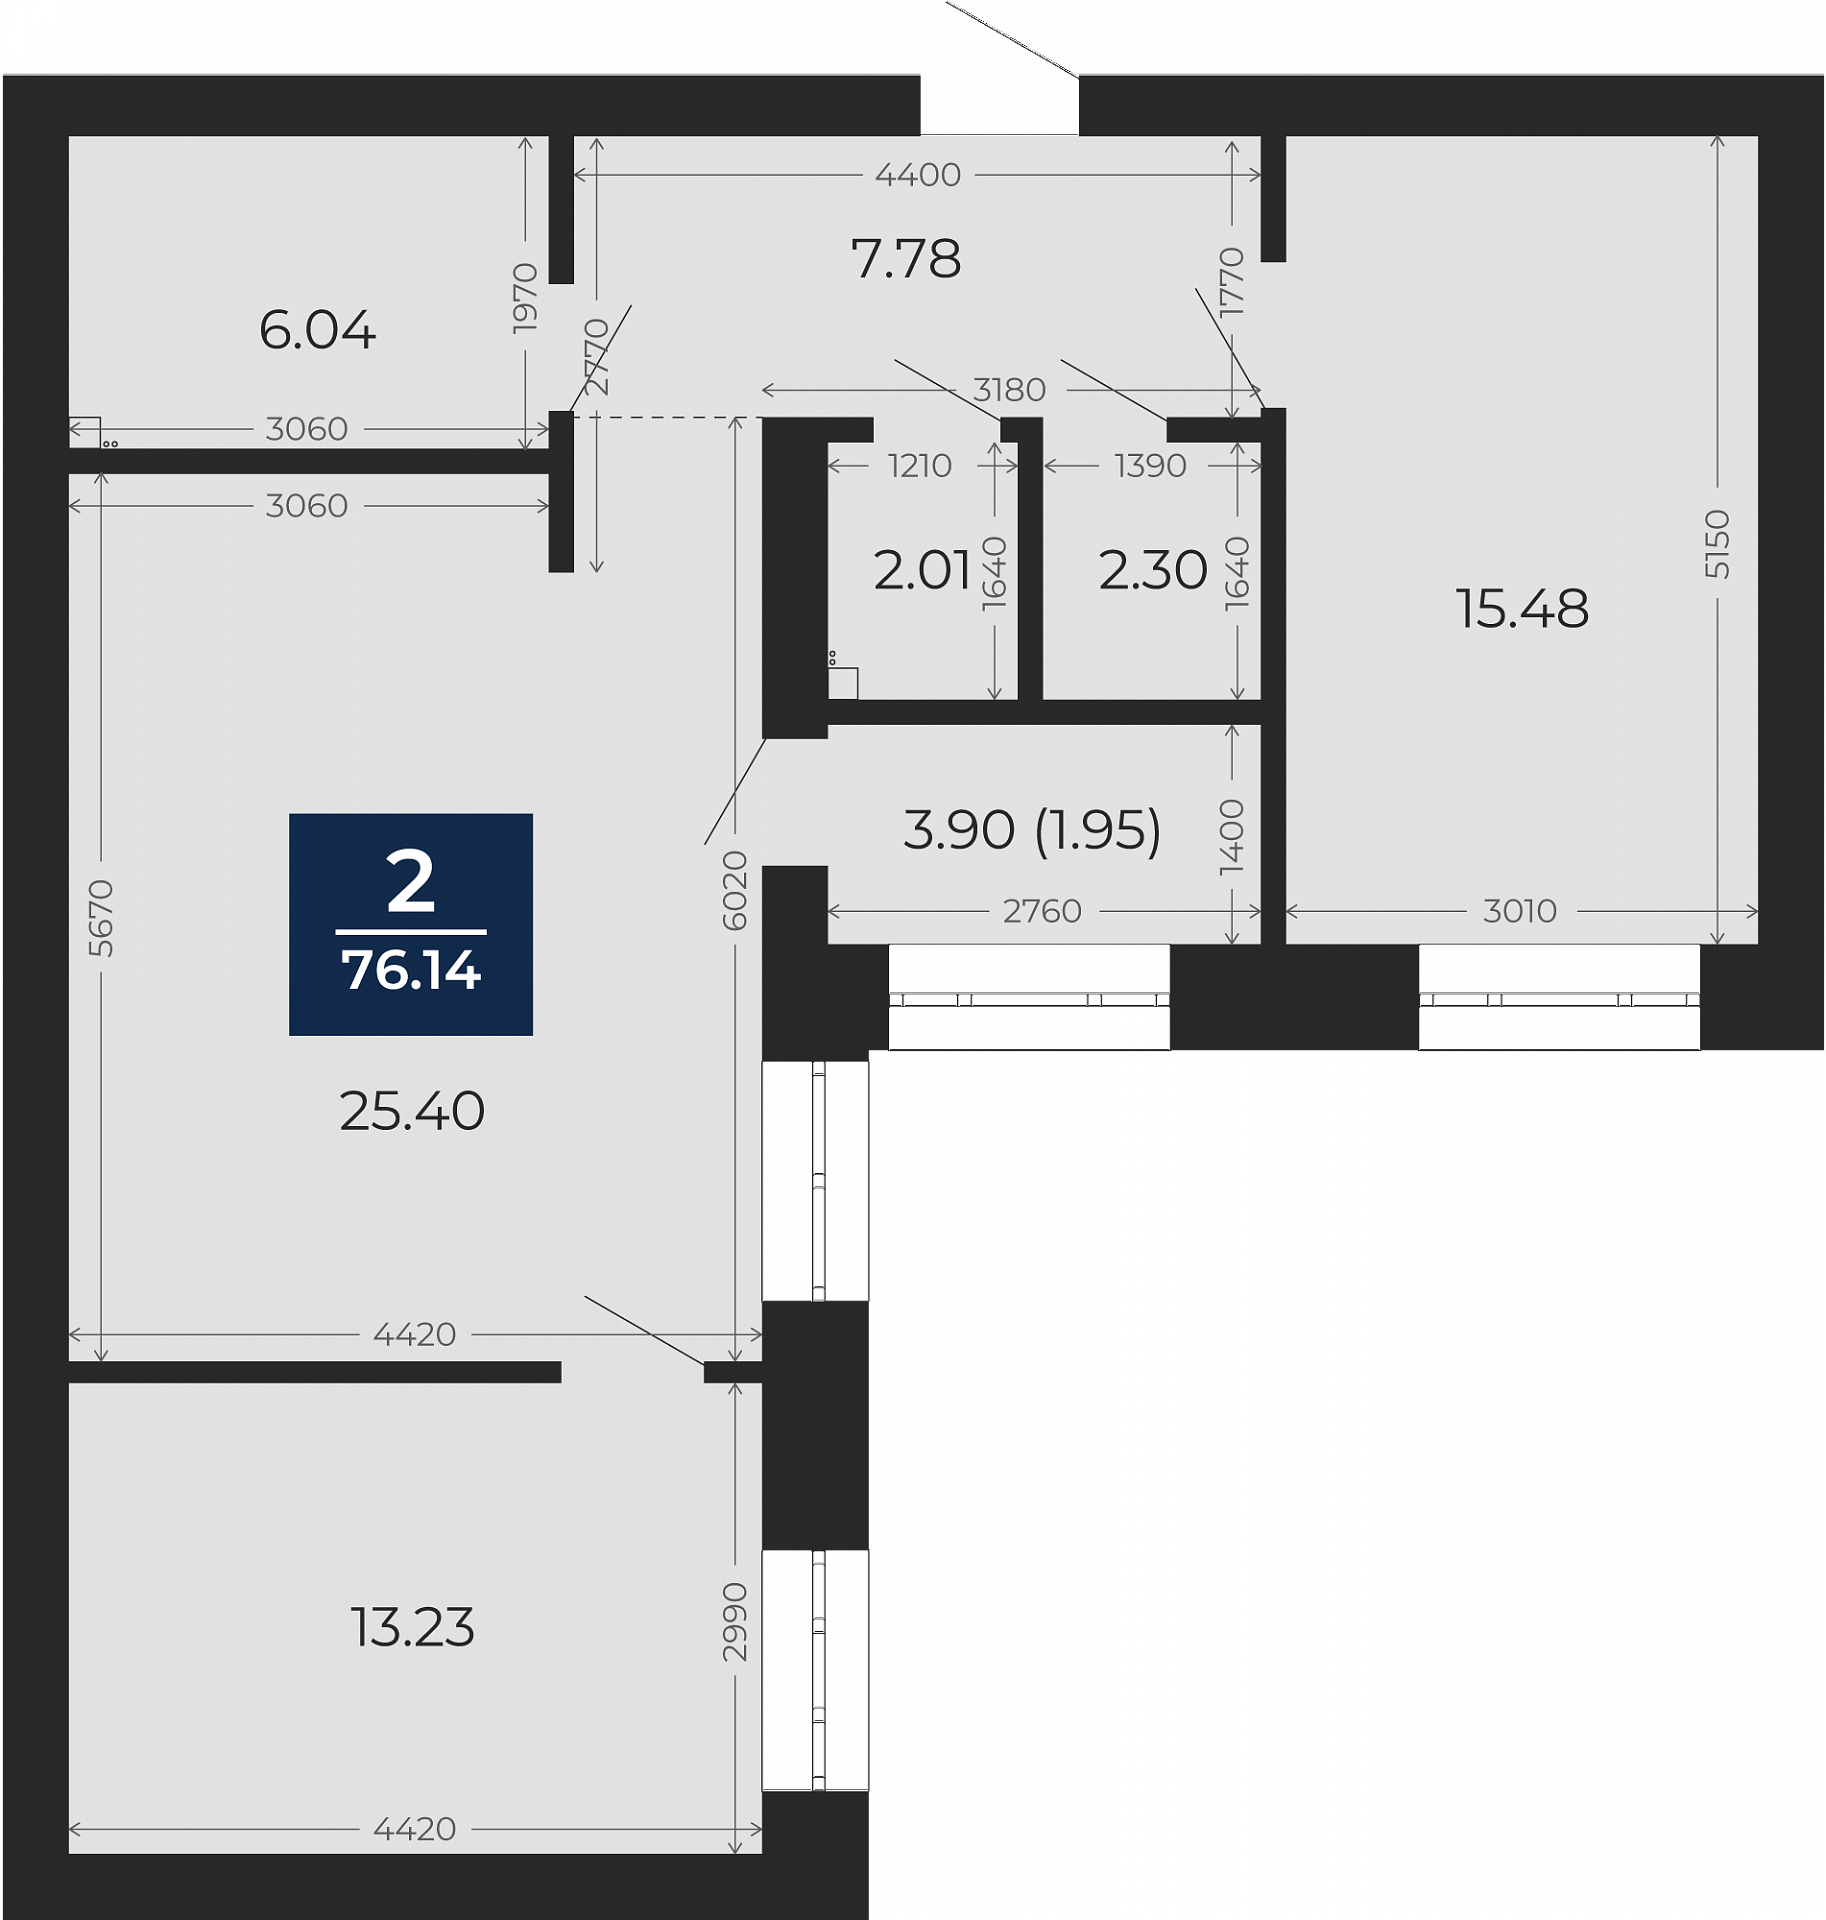 Квартира № 57, 2-комнатная, 76.14 кв. м, 3 этаж